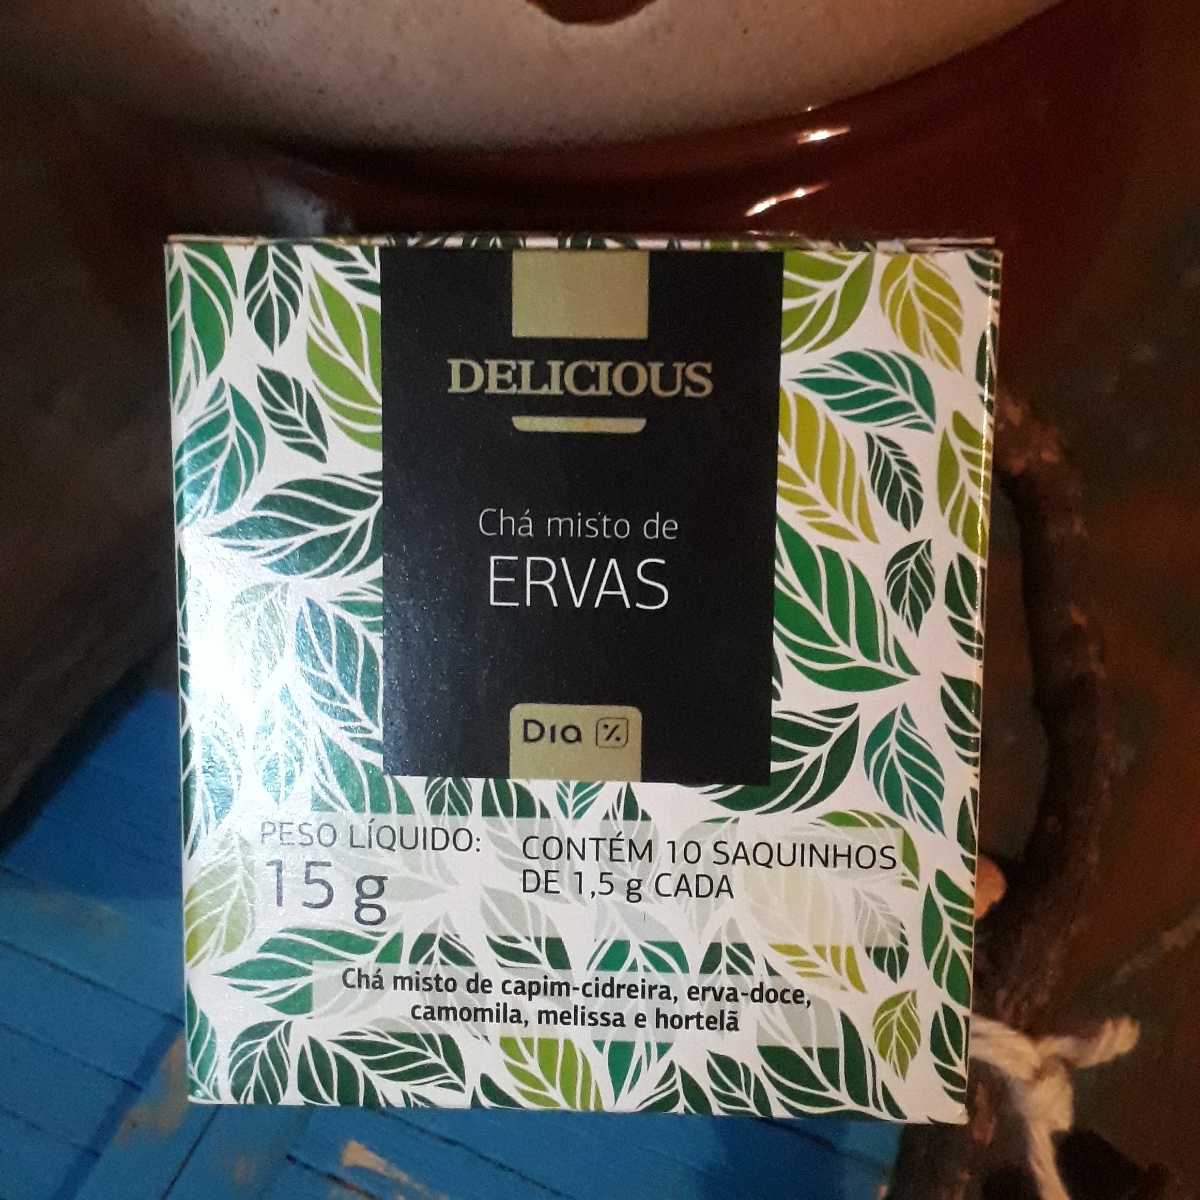 Delicious Chá misto de ervas Reviews | abillion